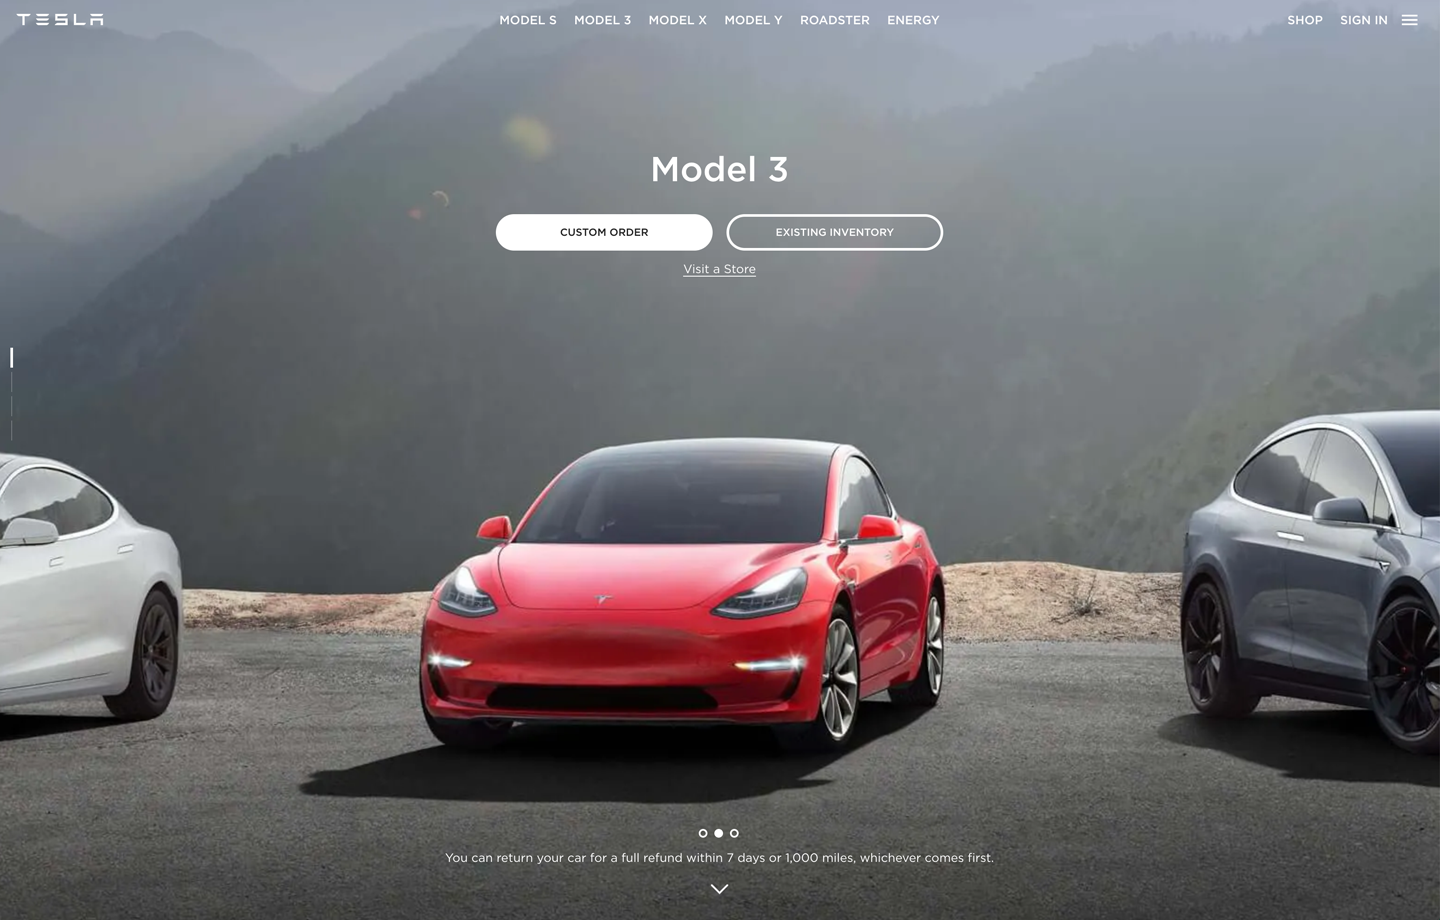 Tesla’s landing page